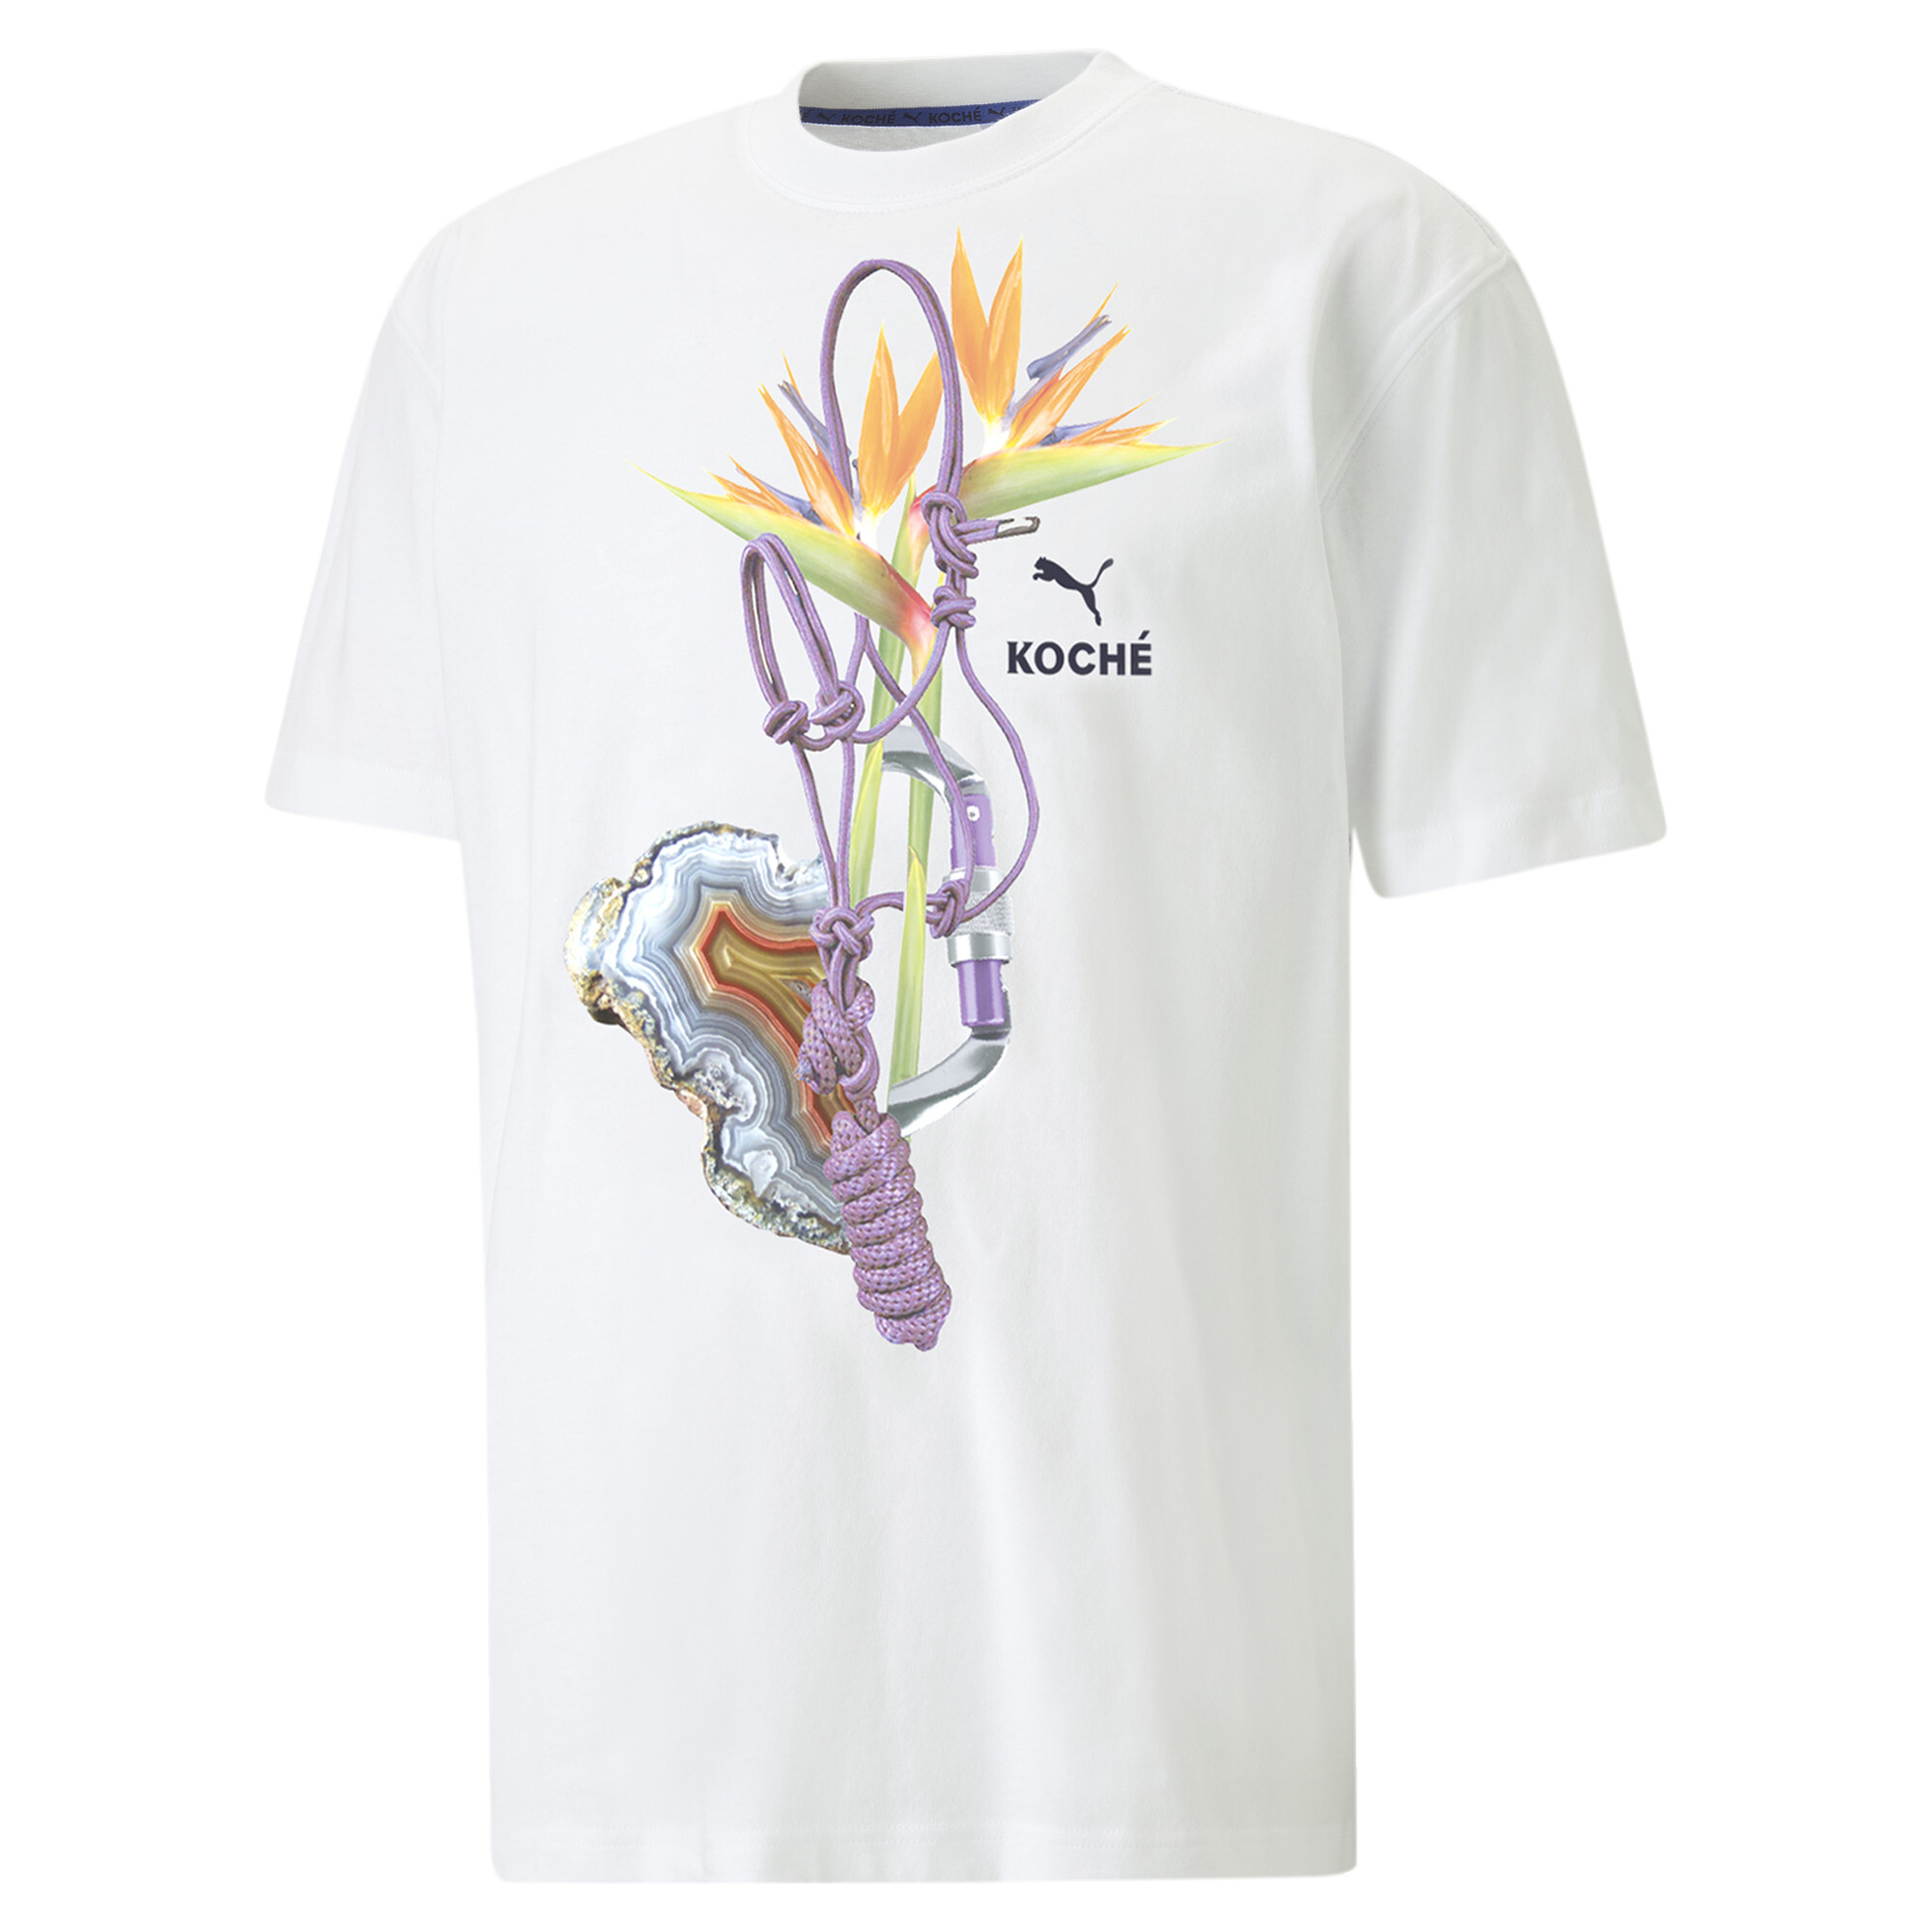 プーマ ユニセックス PUMA x KOCHE グラフィック 半袖 Tシャツ ユニセックス PUMA White ｜PUMA.comの画像